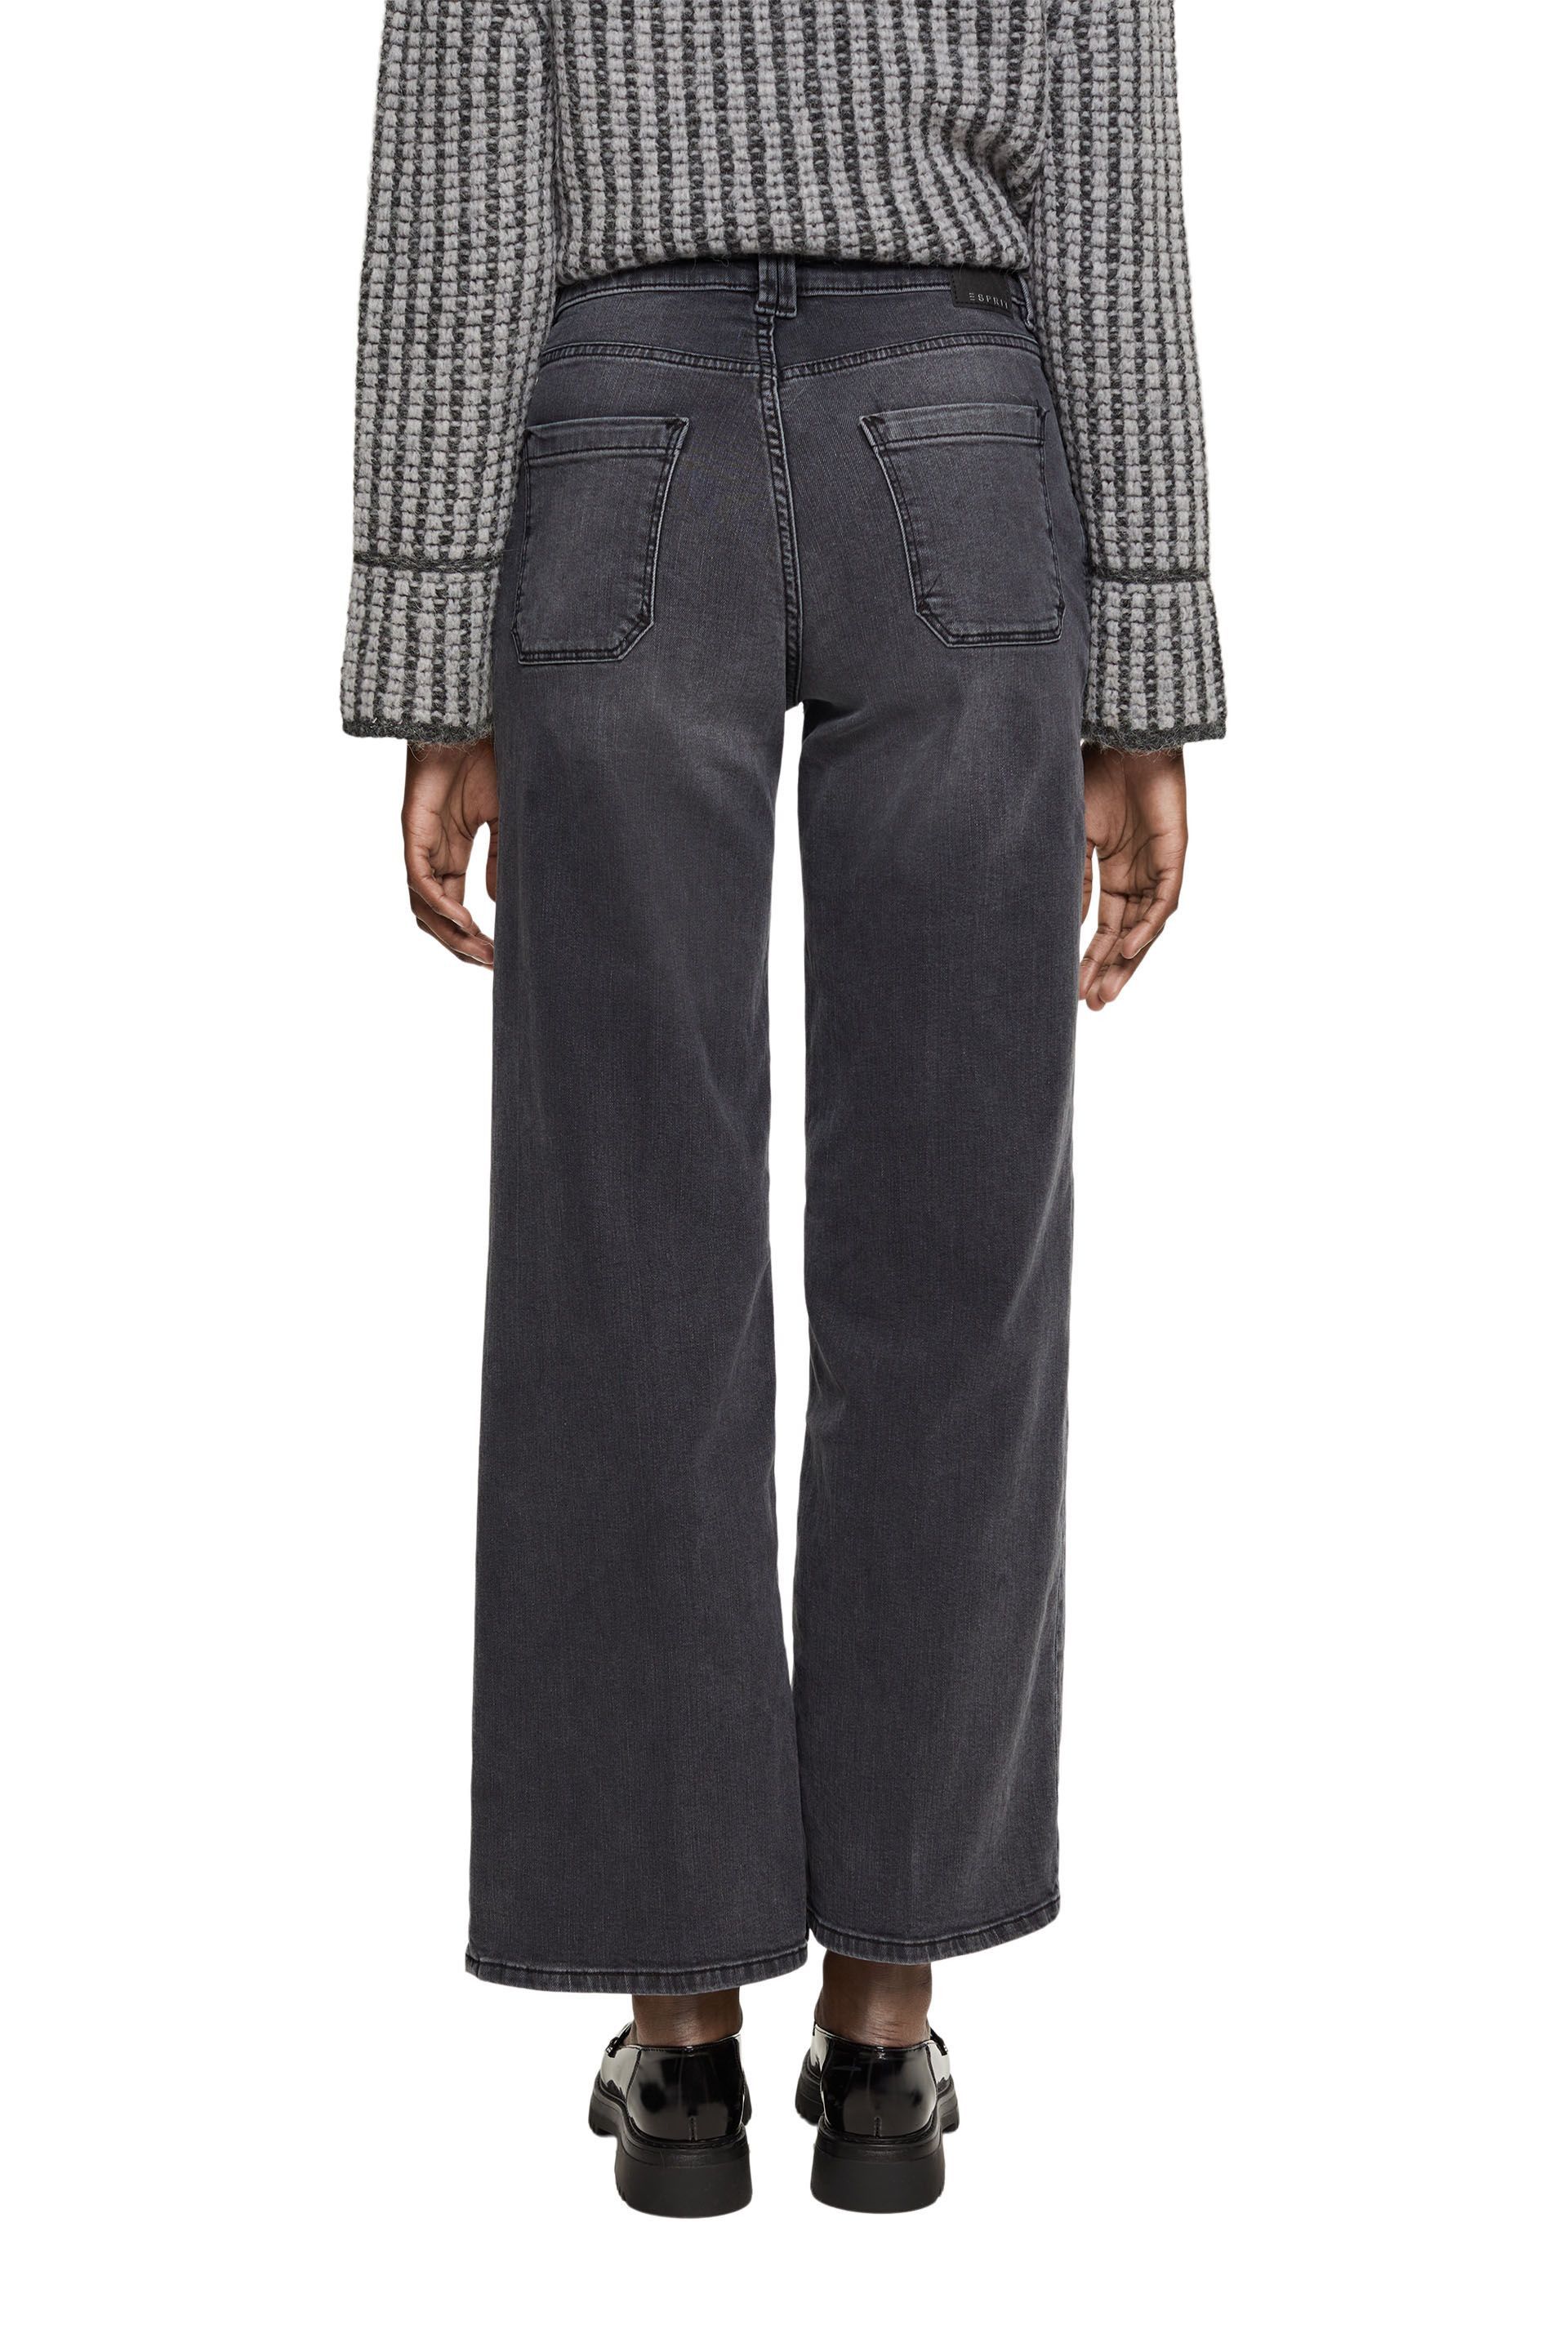 Esprit - Wide leg jeans, Black, large image number 2